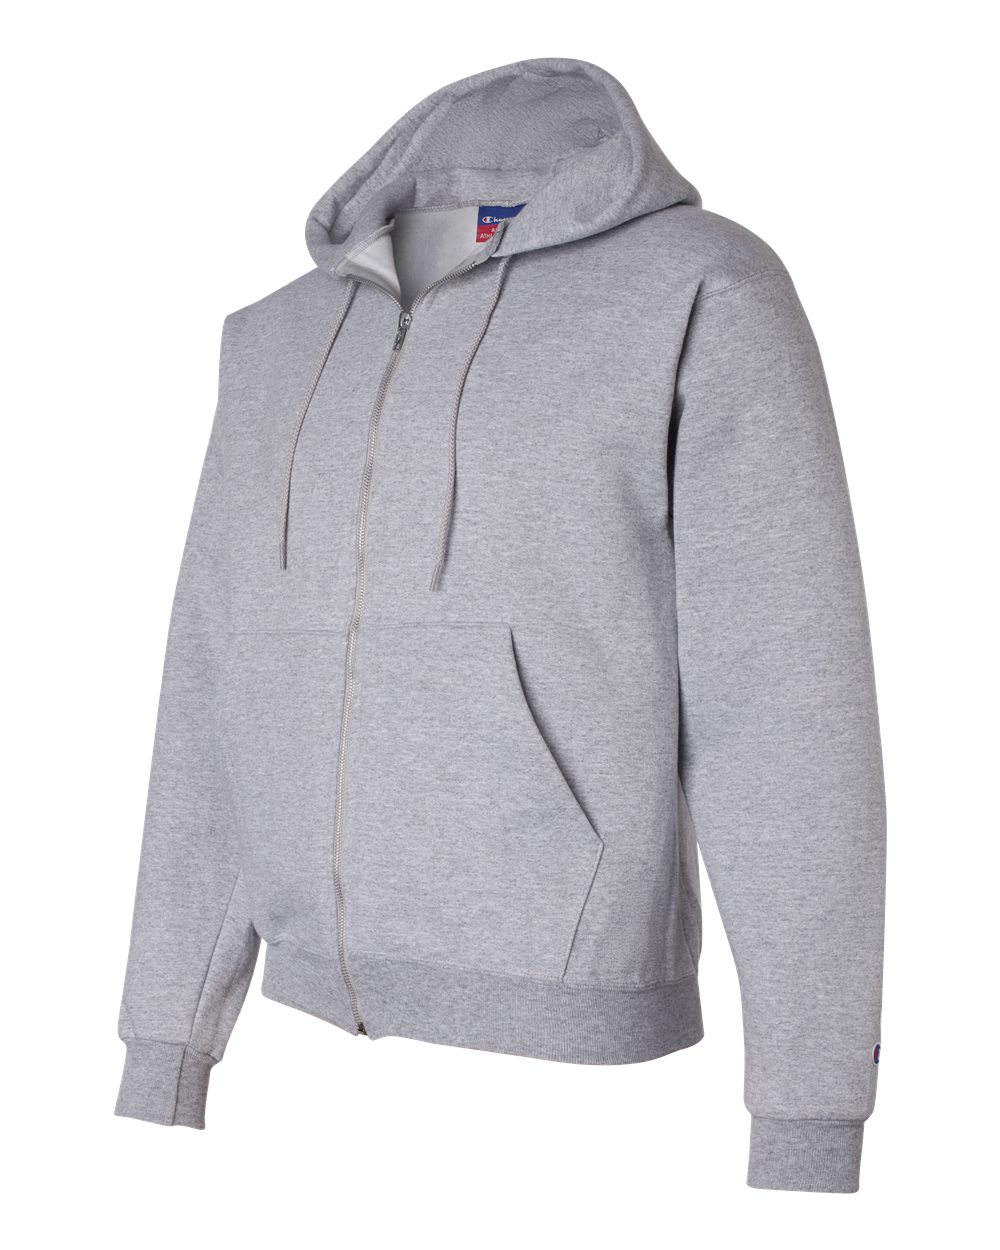 grey champion zip up hoodie